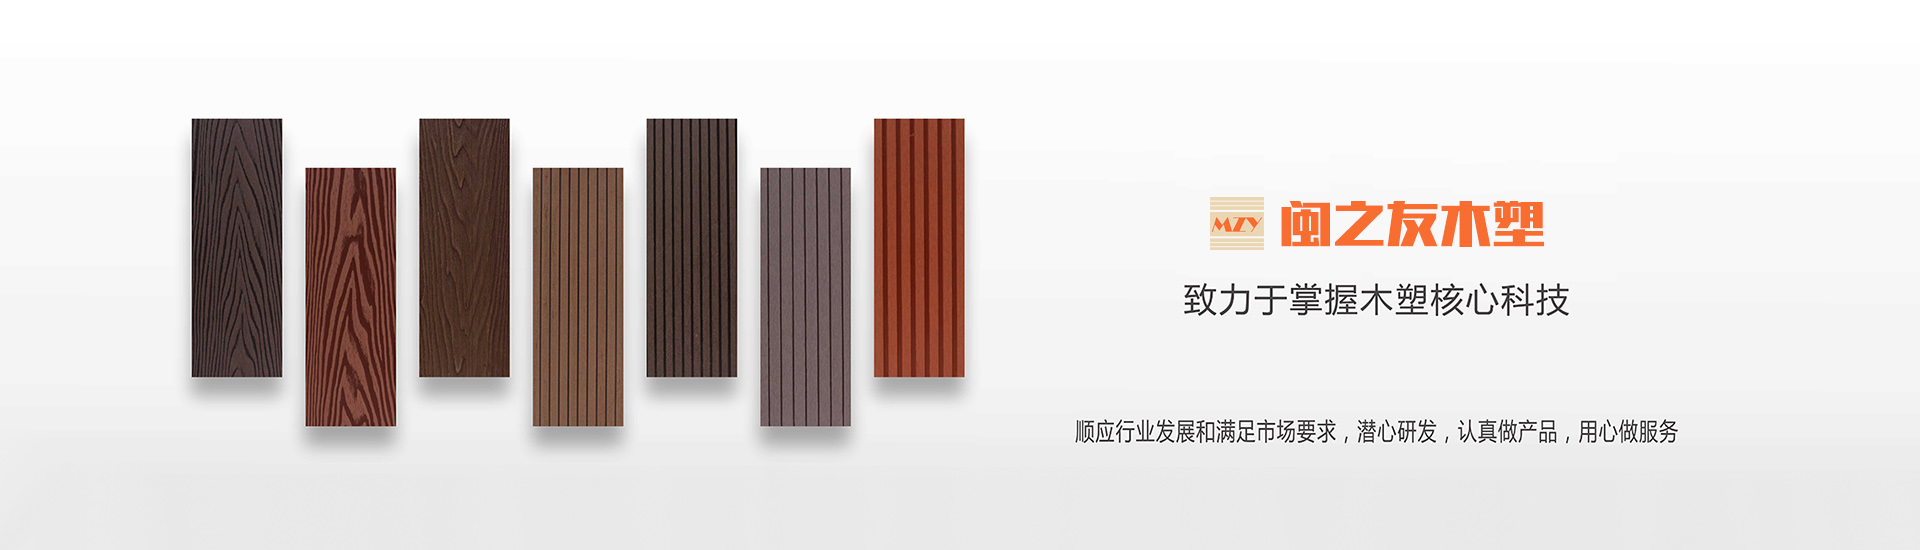 塑木地板方孔140X30-木塑地板-陕西闽之友木塑科技有限公司